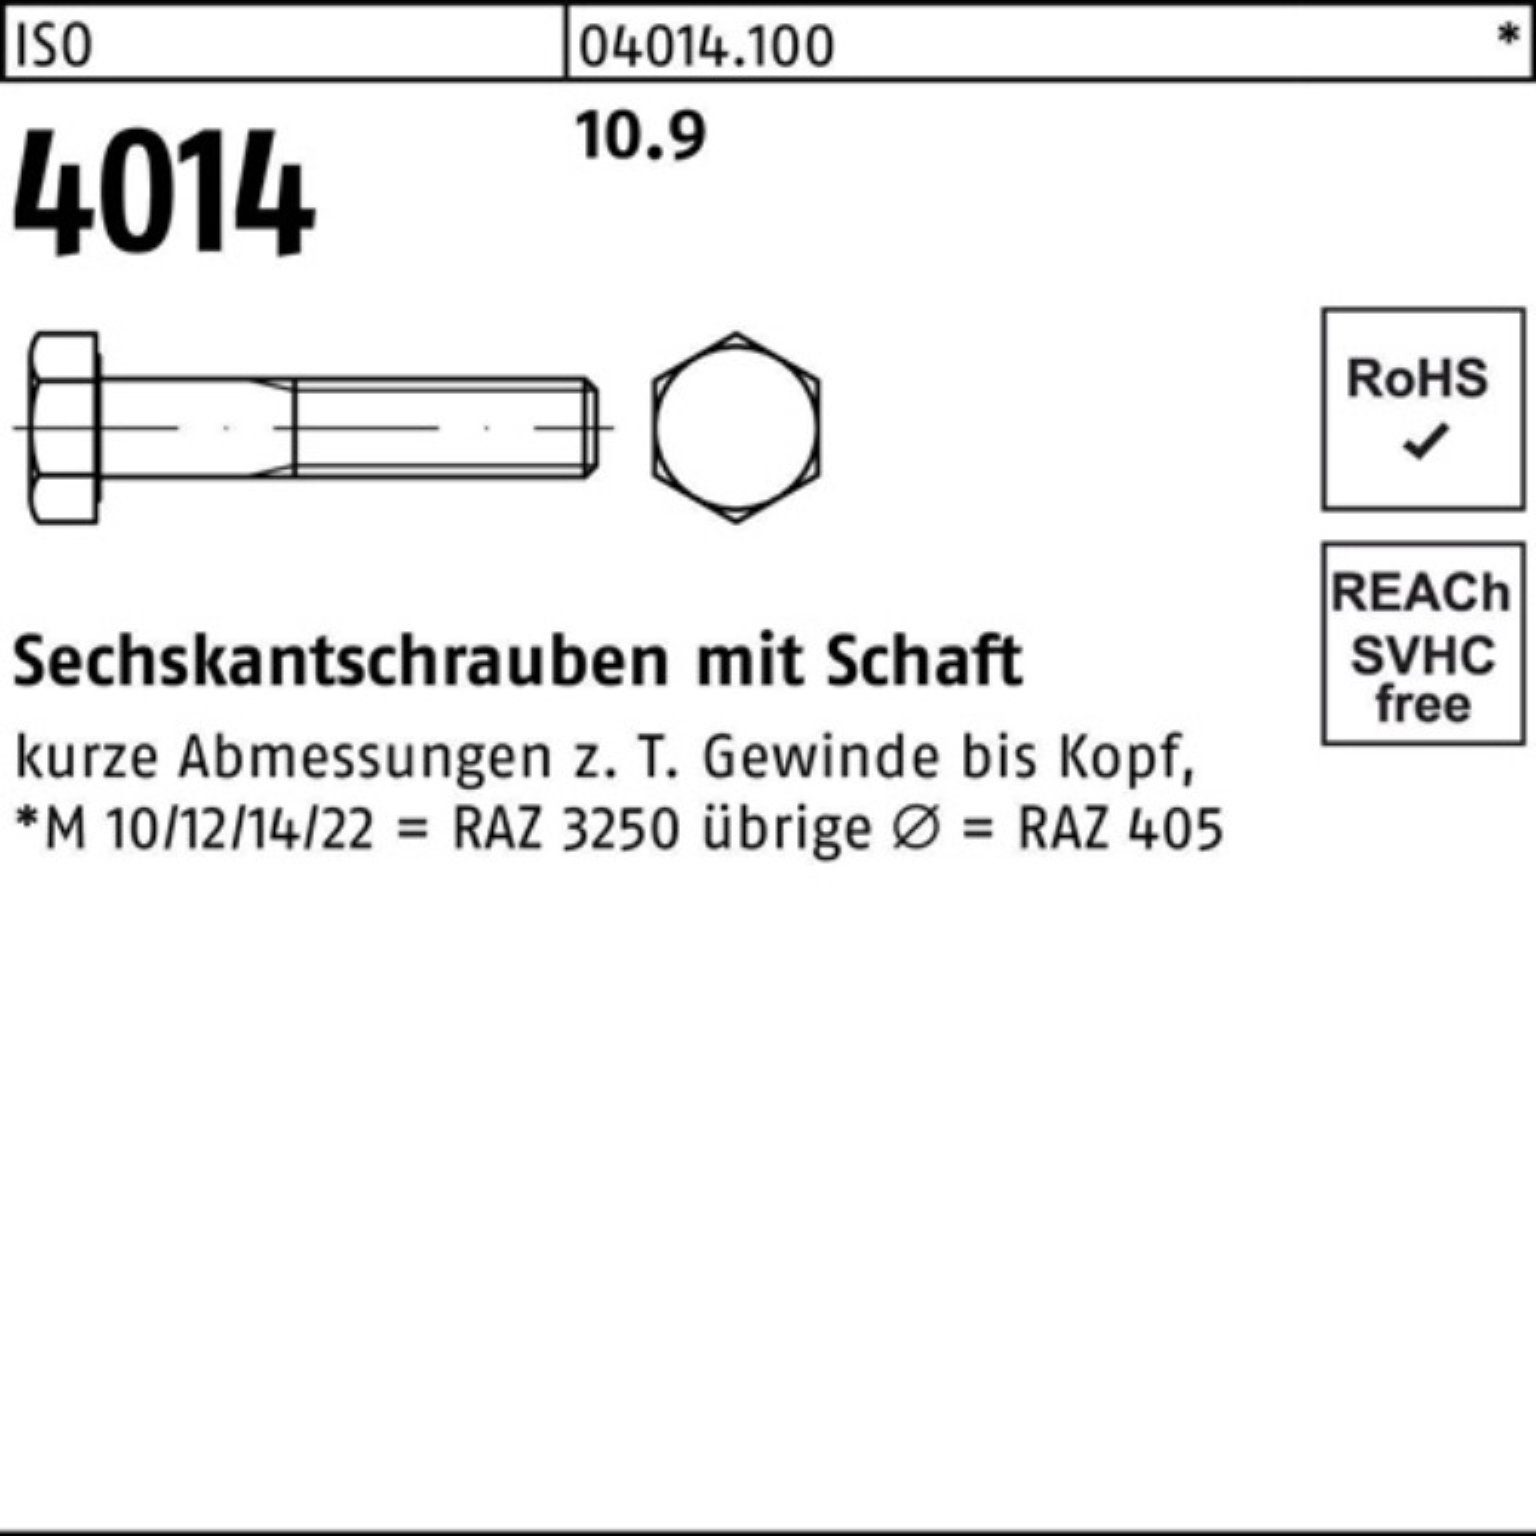 160 4014 Sechskantschraube IS ISO Stück Sechskantschraube 1 10.9 Bufab 100er Schaft M39x Pack